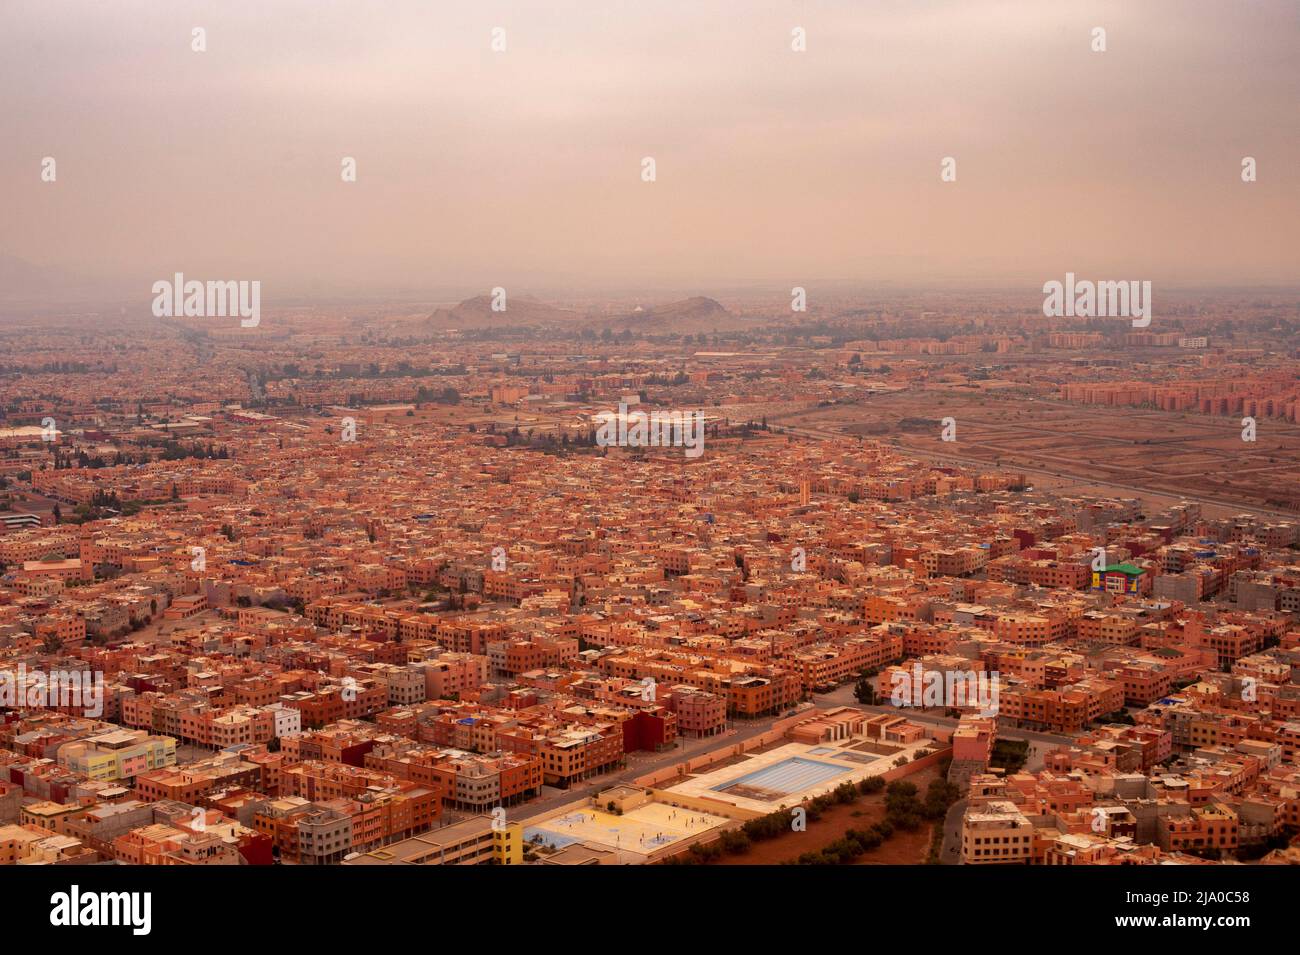 Marrakesch von oben gesehen. Marrakesch, Marokko. Stockfoto